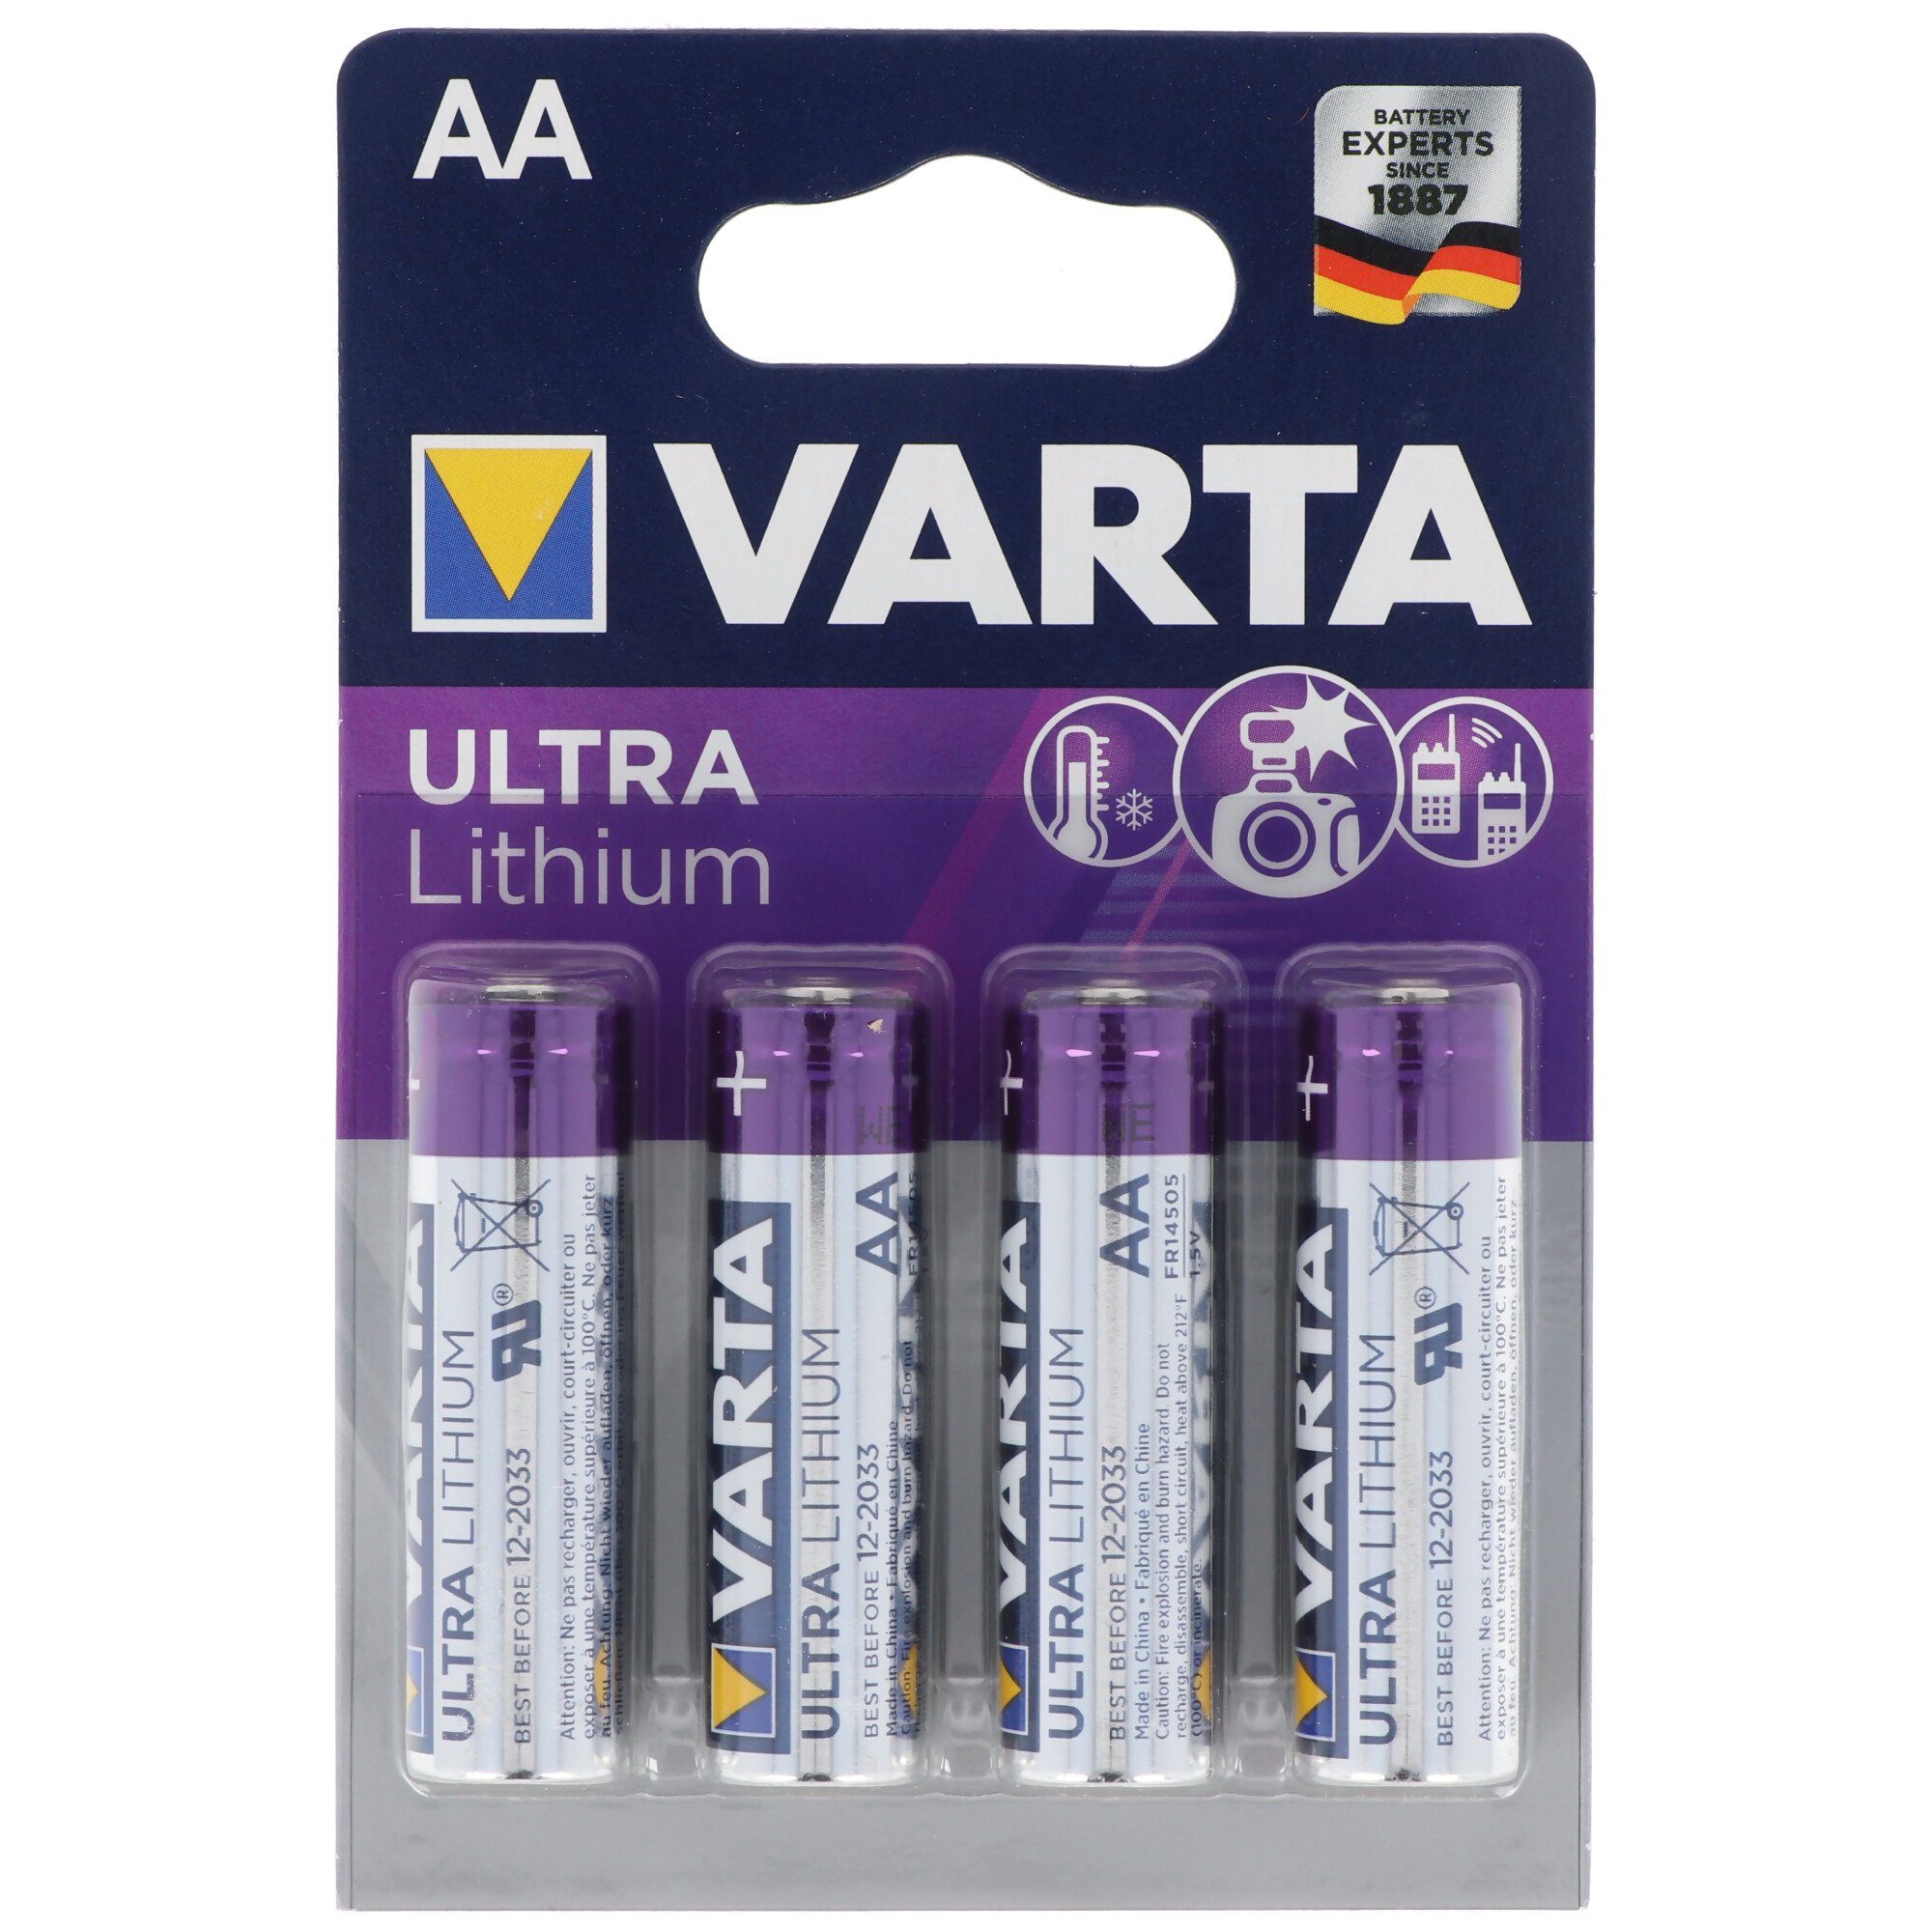 1,5V, Lithium Batterien, Varta 4 AA, Lithium Varta Batterie Ultra VARTA 6106, Mignon